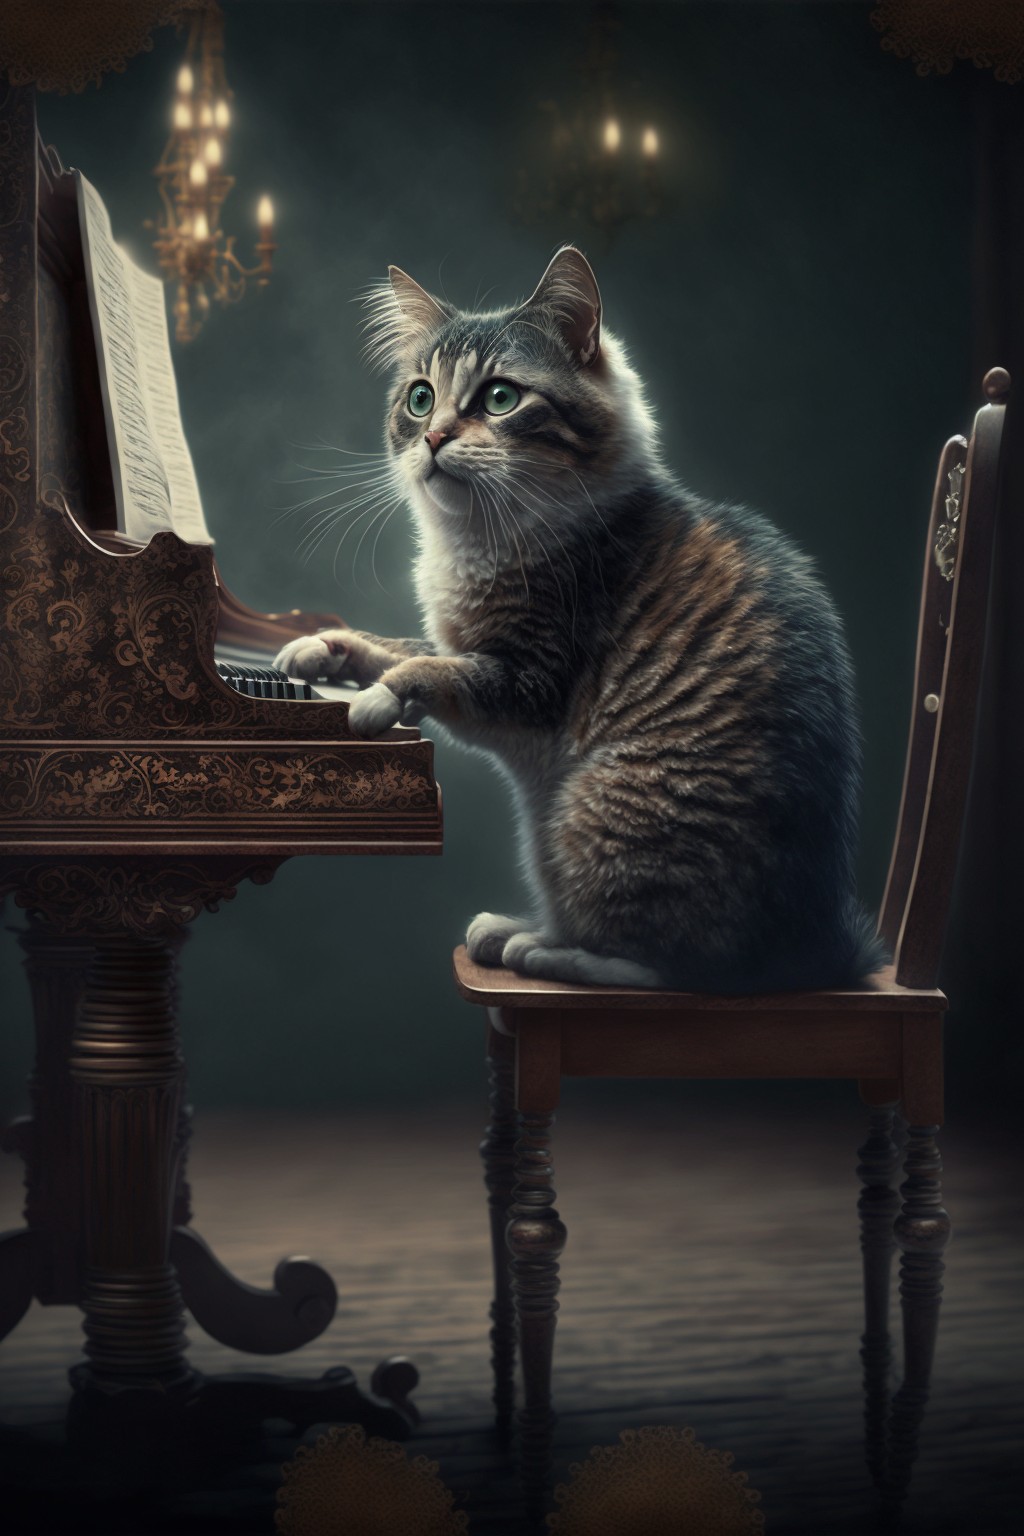 邻居家的猫坐在凳子上弹起了钢琴